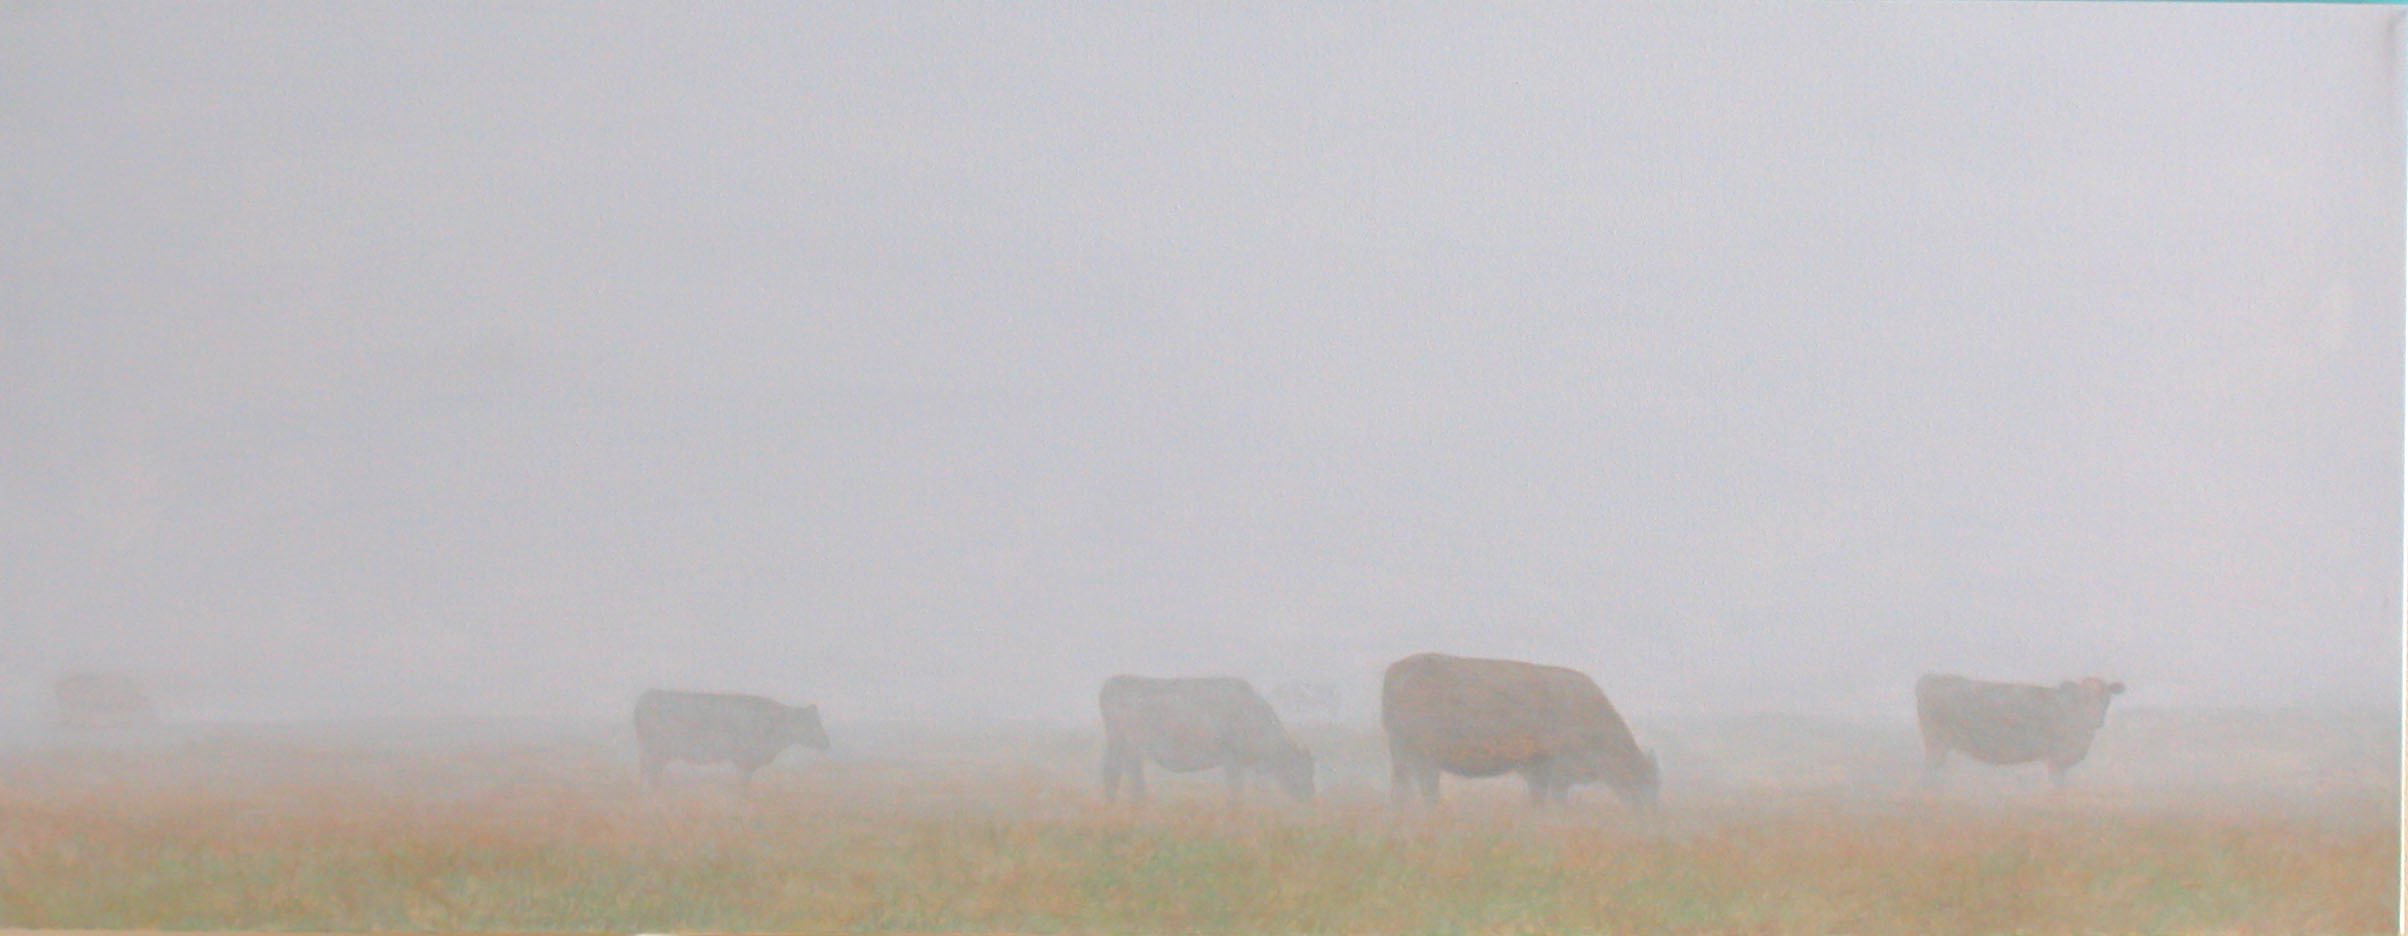 Cows & Mist 2 Acrylic on Canvas 60"x30"